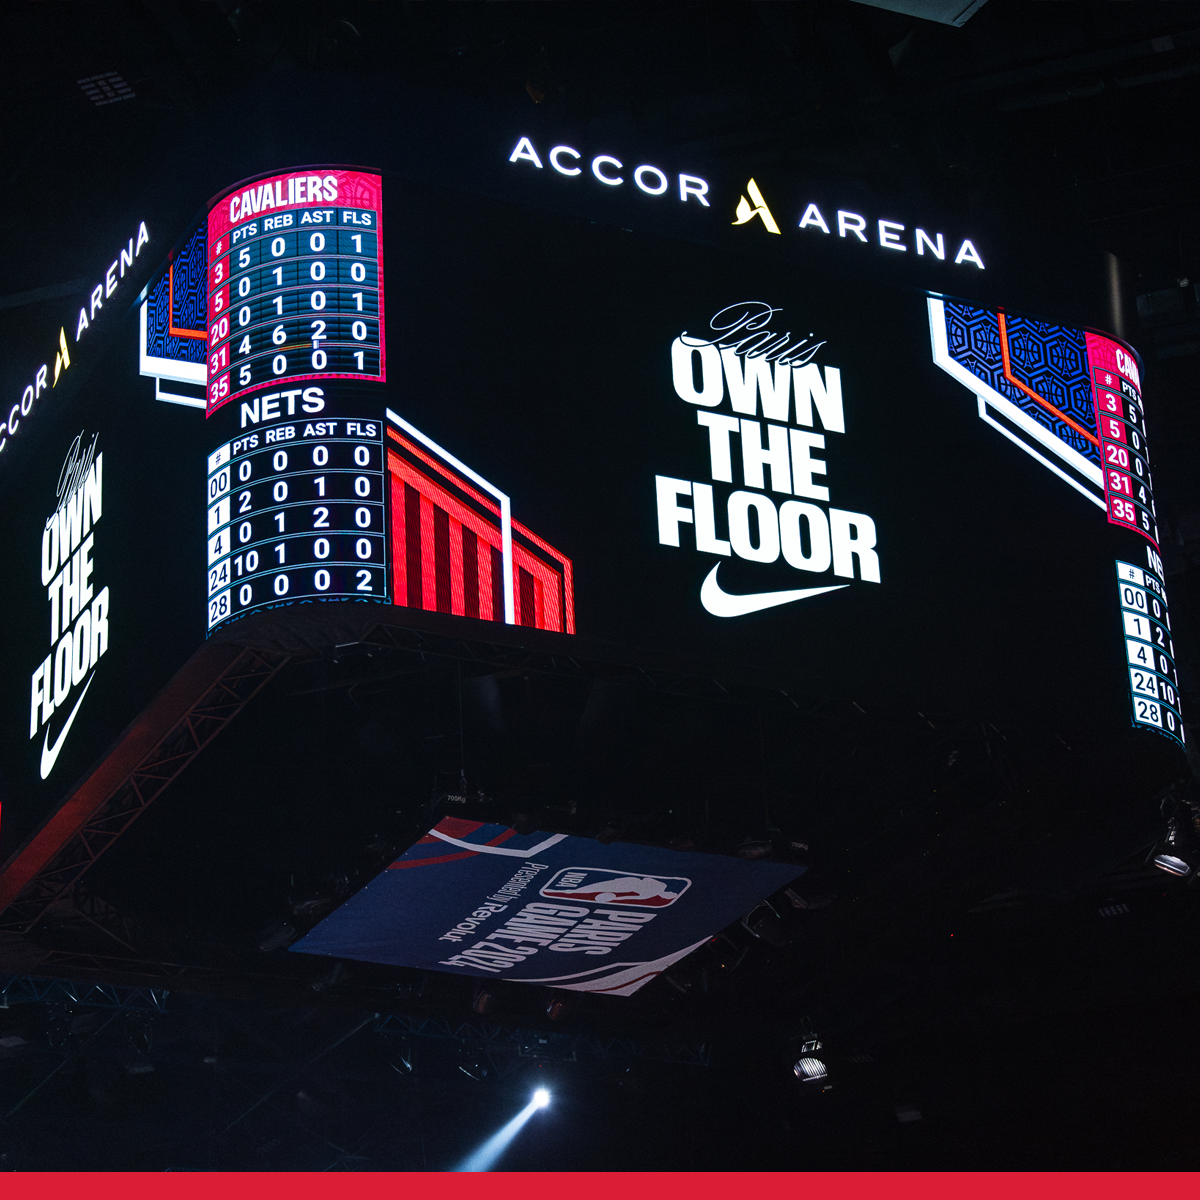 L'Accor Arena a accueillit pour la 3ème année un match de saison